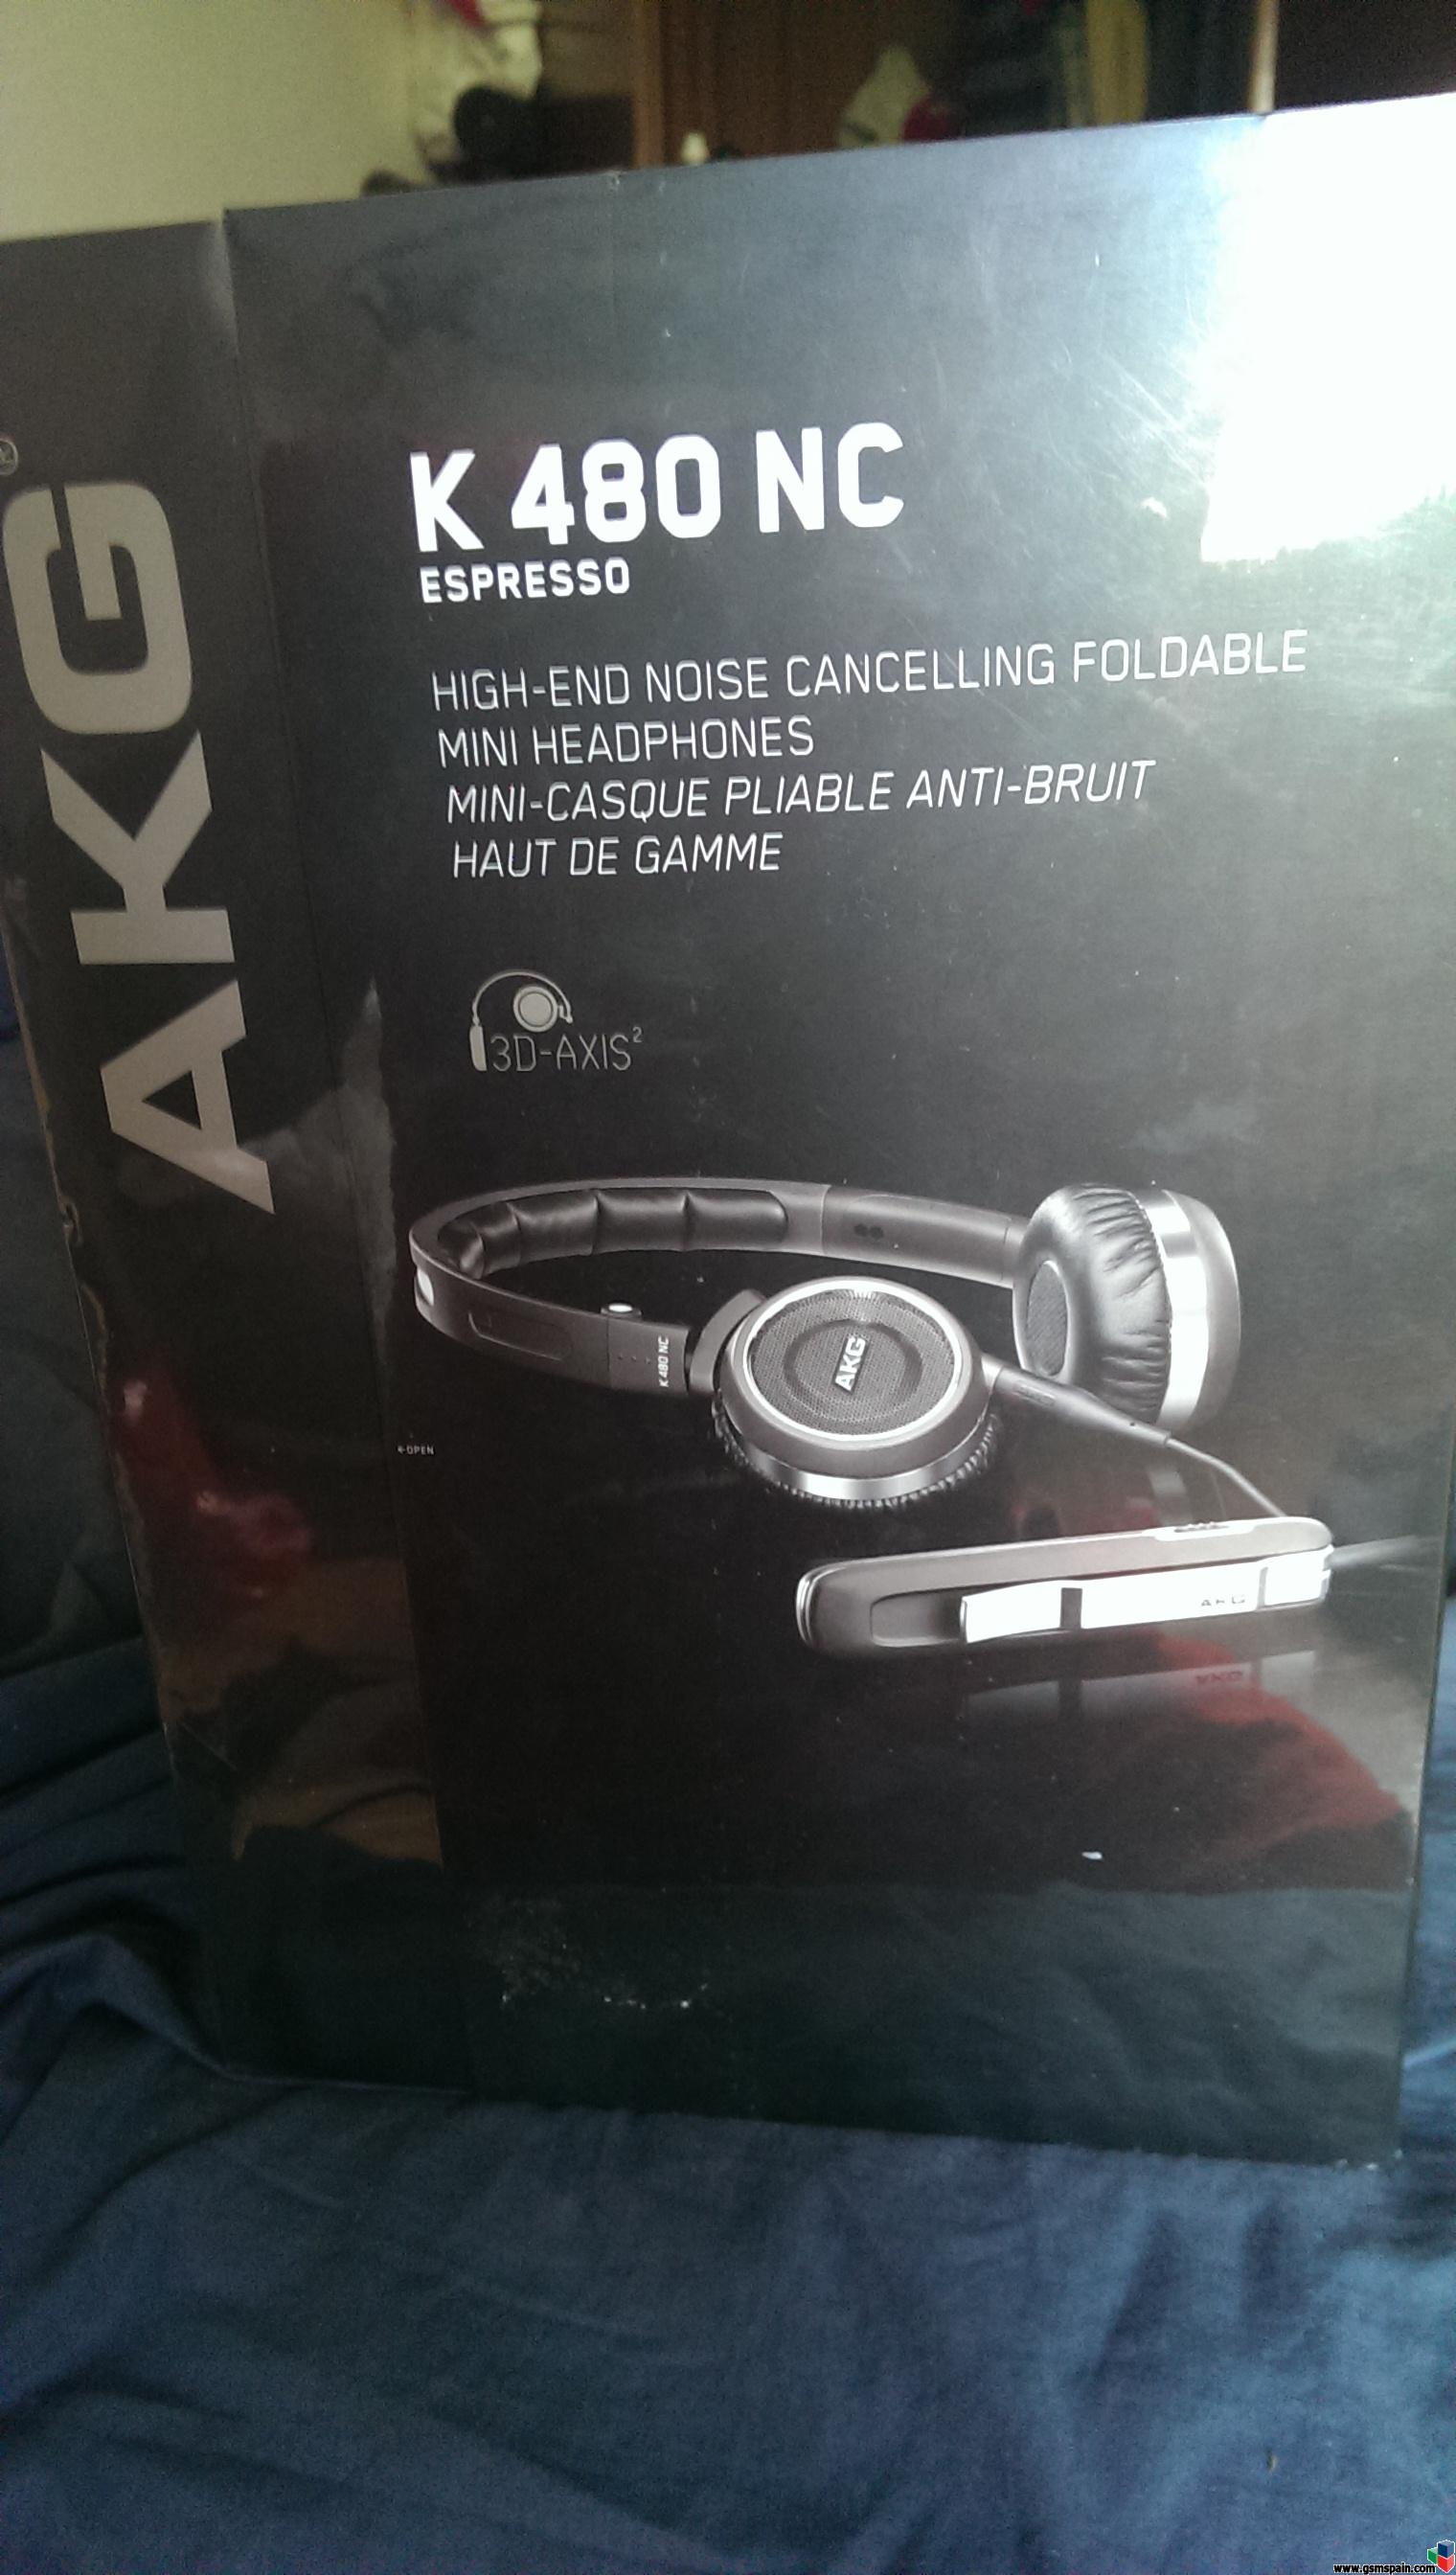 [SUBASTO] Auriculares AKG gama alta modelo K480NC Noise canceling nuevos precintados